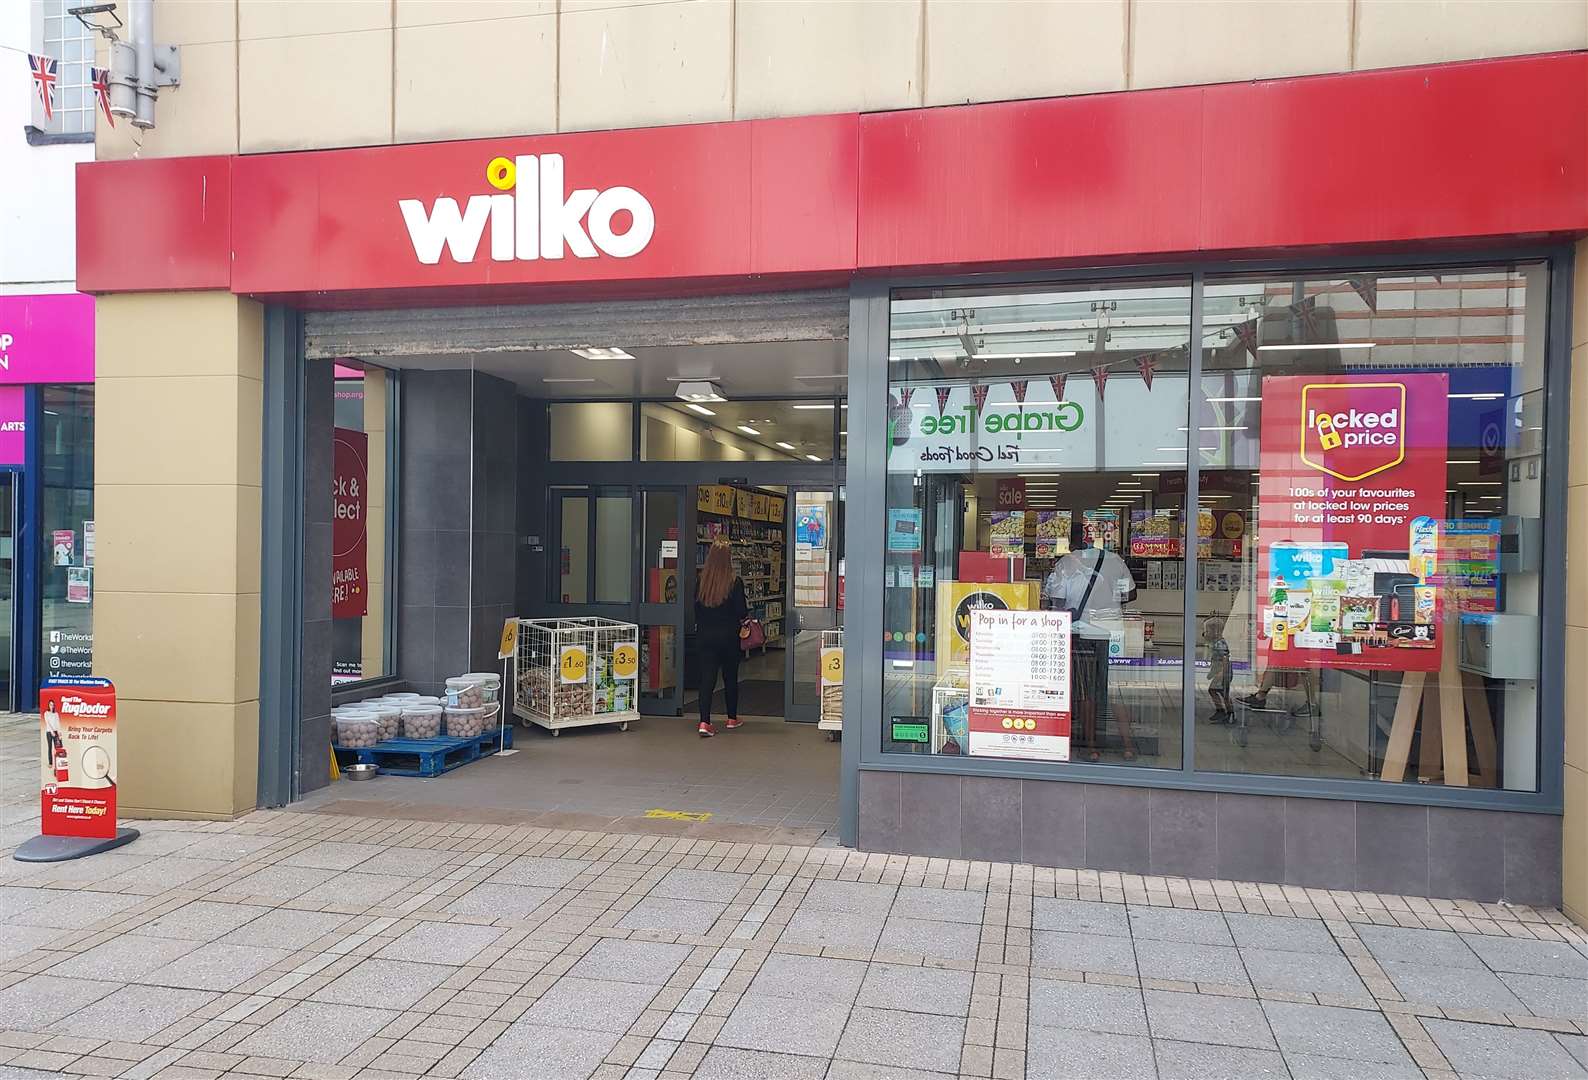 The Wilko store in King's Lynn